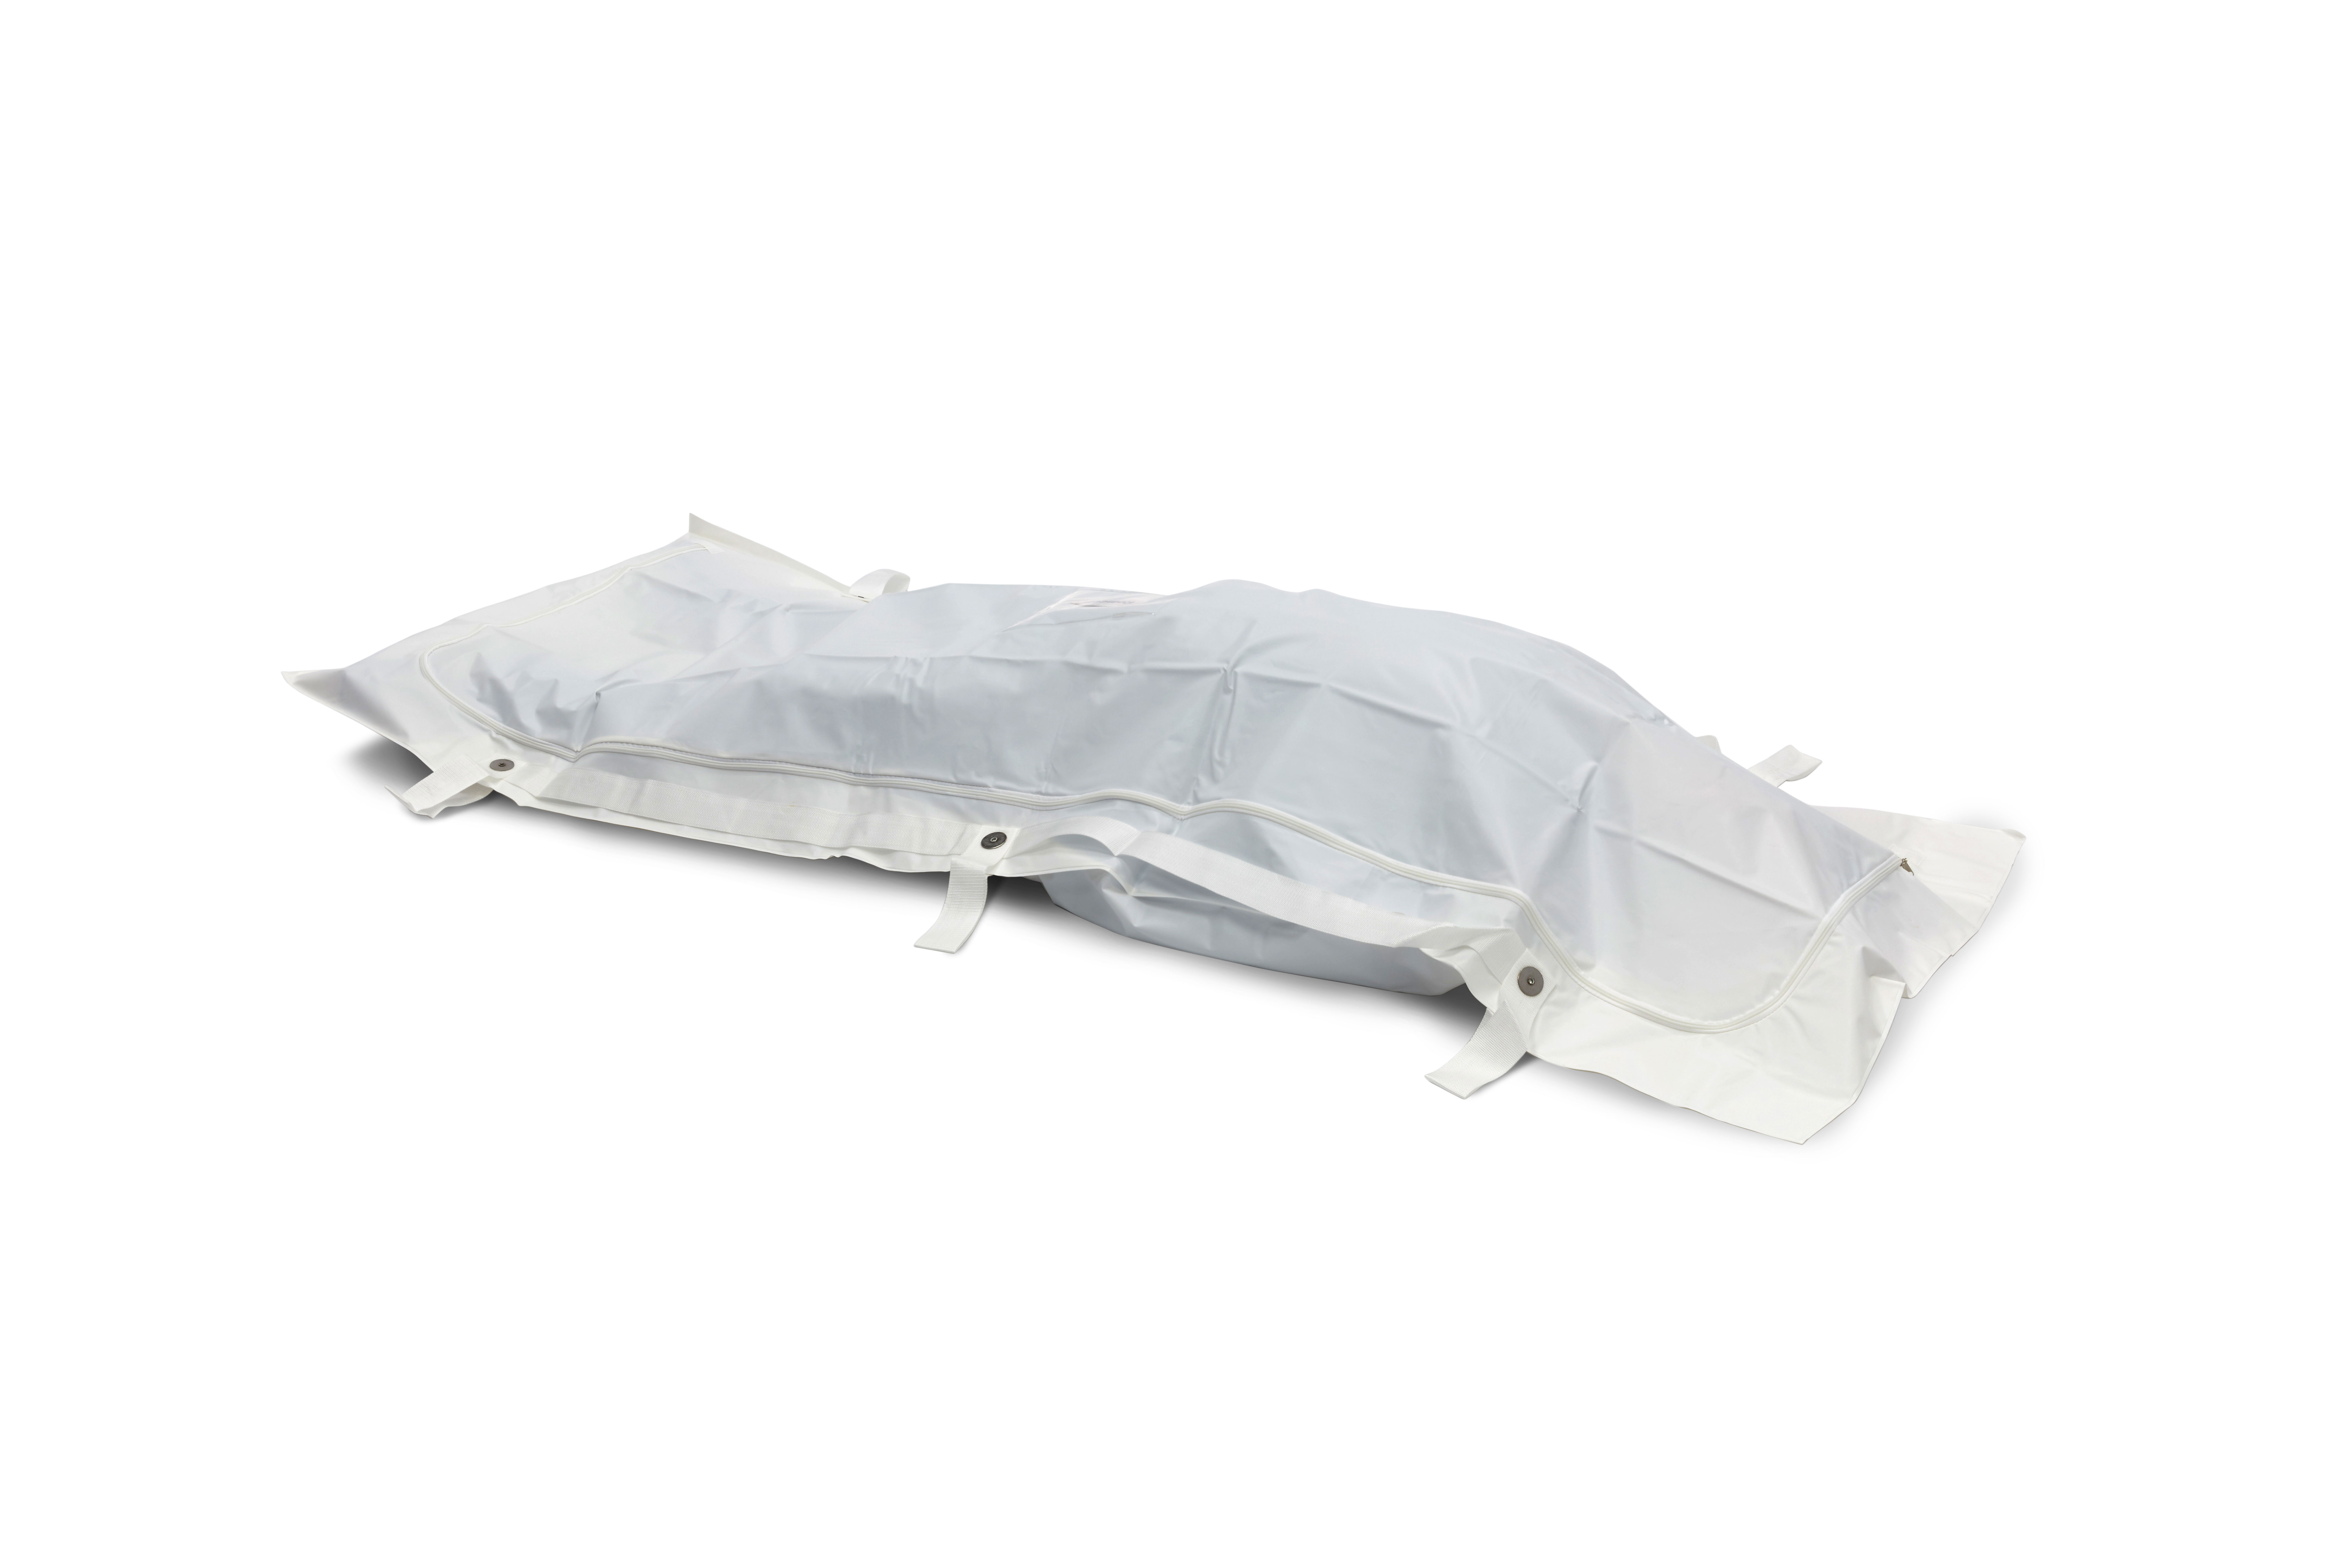 BODYBAGS Romed PEVA body bags/mortuary bags, wit, 6 handgrepen, 90 x 230 cm, per stuk in een polyzak, 20 stuks in een karton.